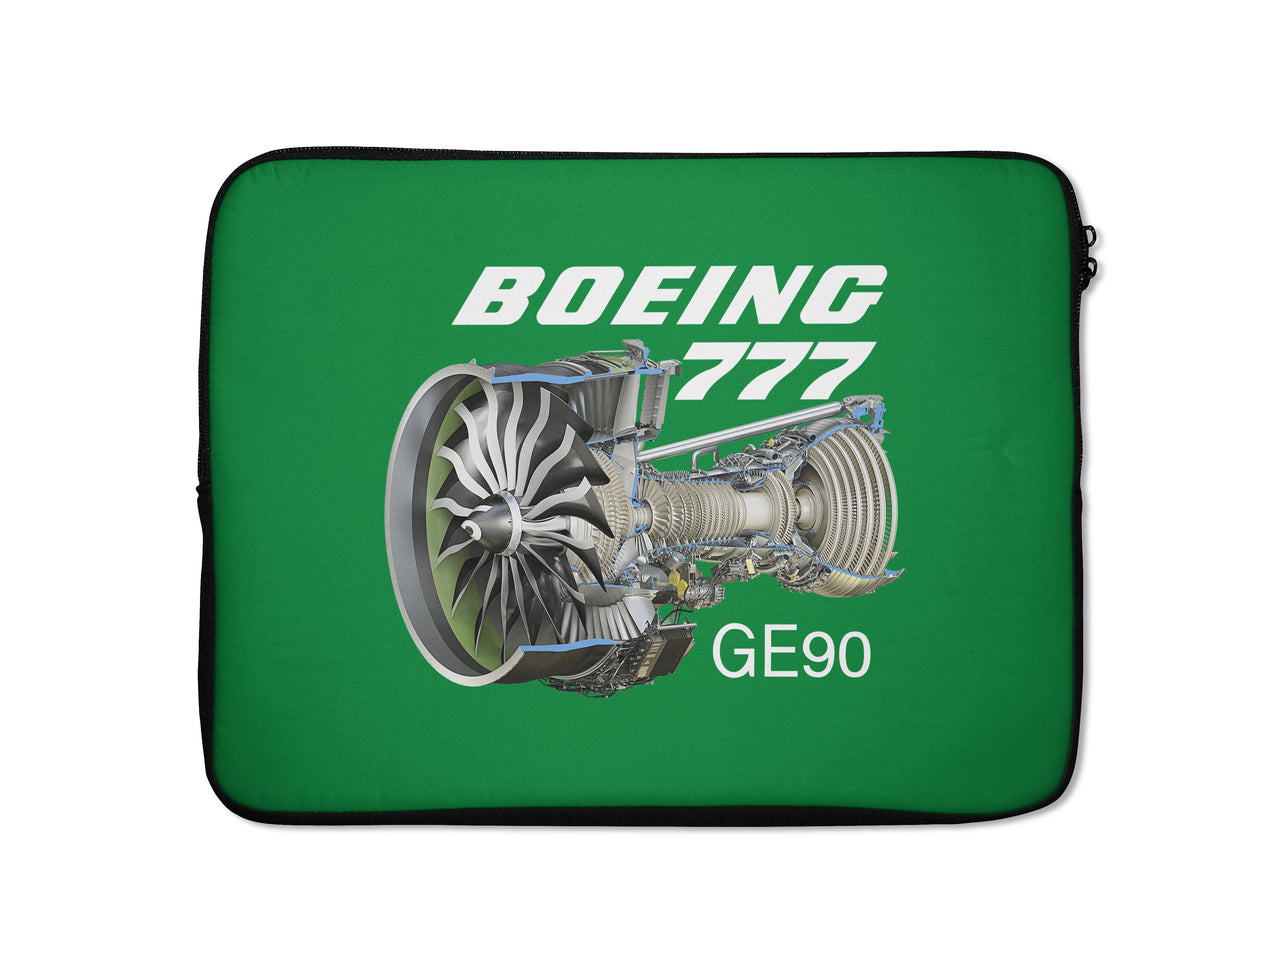 Boeing 777 & GE90 Engine Designed Laptop & Tablet Cases